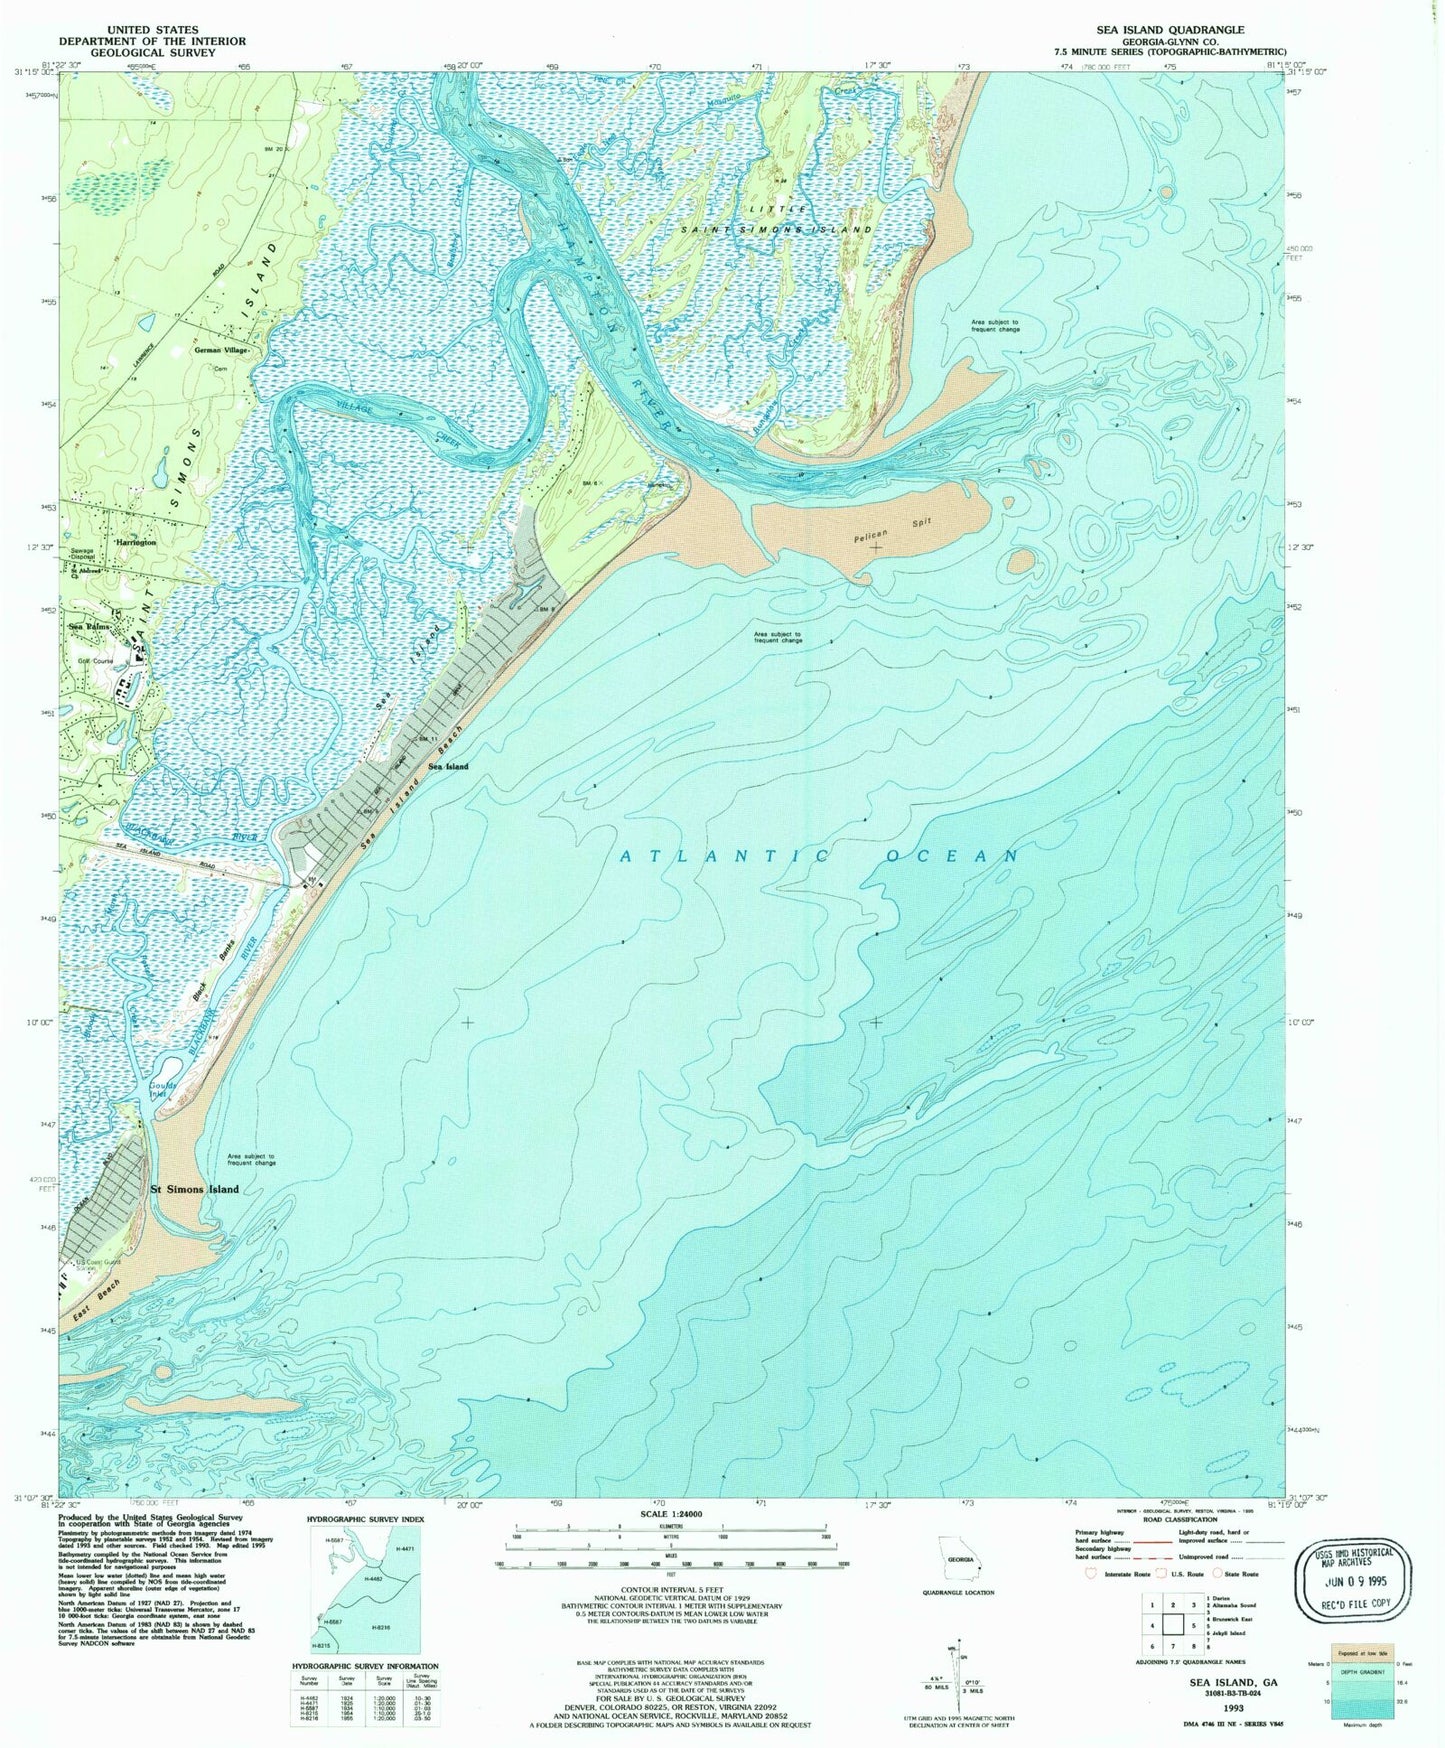 USGS Classic Sea Island Georgia 7.5'x7.5' Topo Map Image